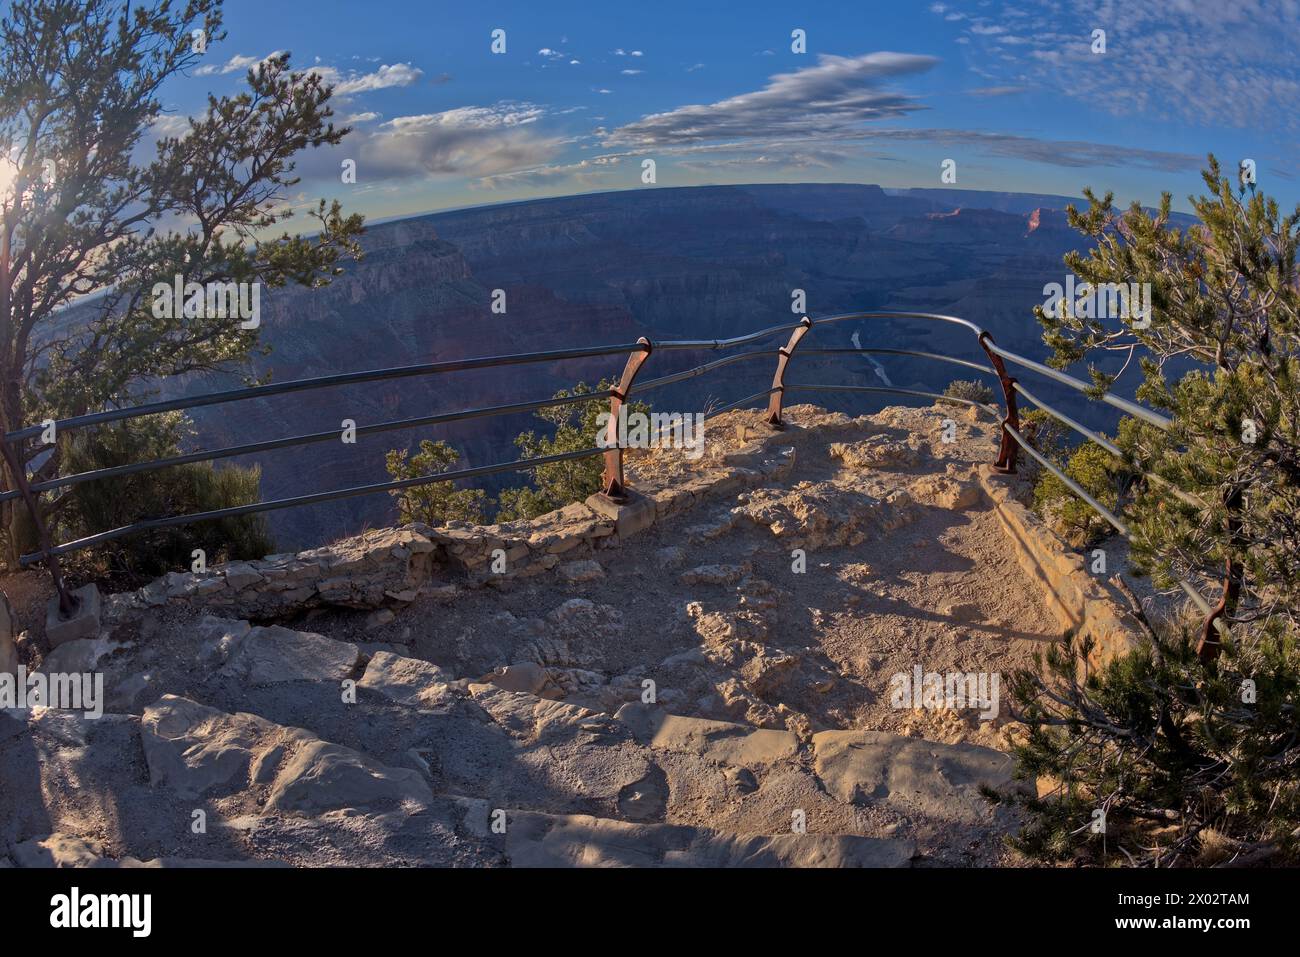 Die Steinklippe mit Sicherheitsgeländern des Mohave Point Overlook, Grand Canyon, UNESCO-Weltkulturerbe, Arizona, Vereinigte Staaten von Amerika, Nordamerika Stockfoto